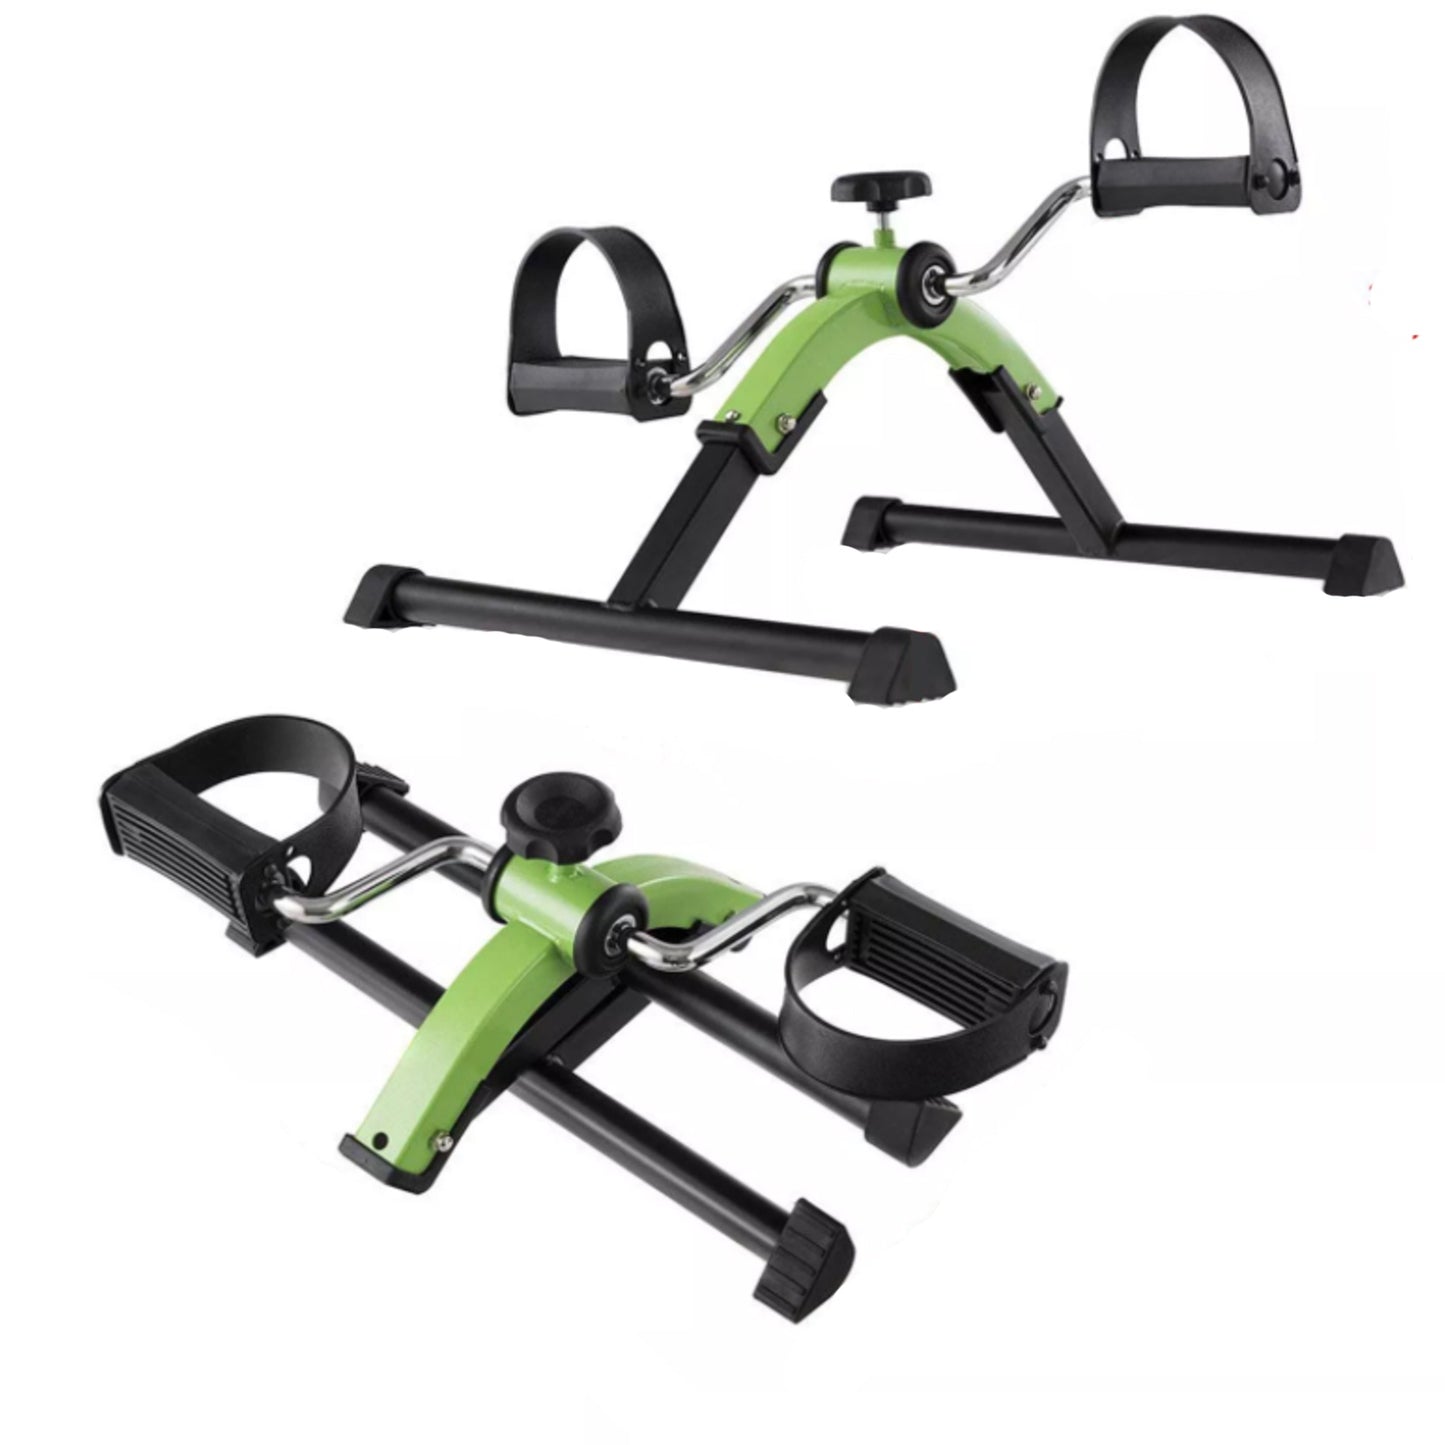 Pedal Exerciser - Green Folding